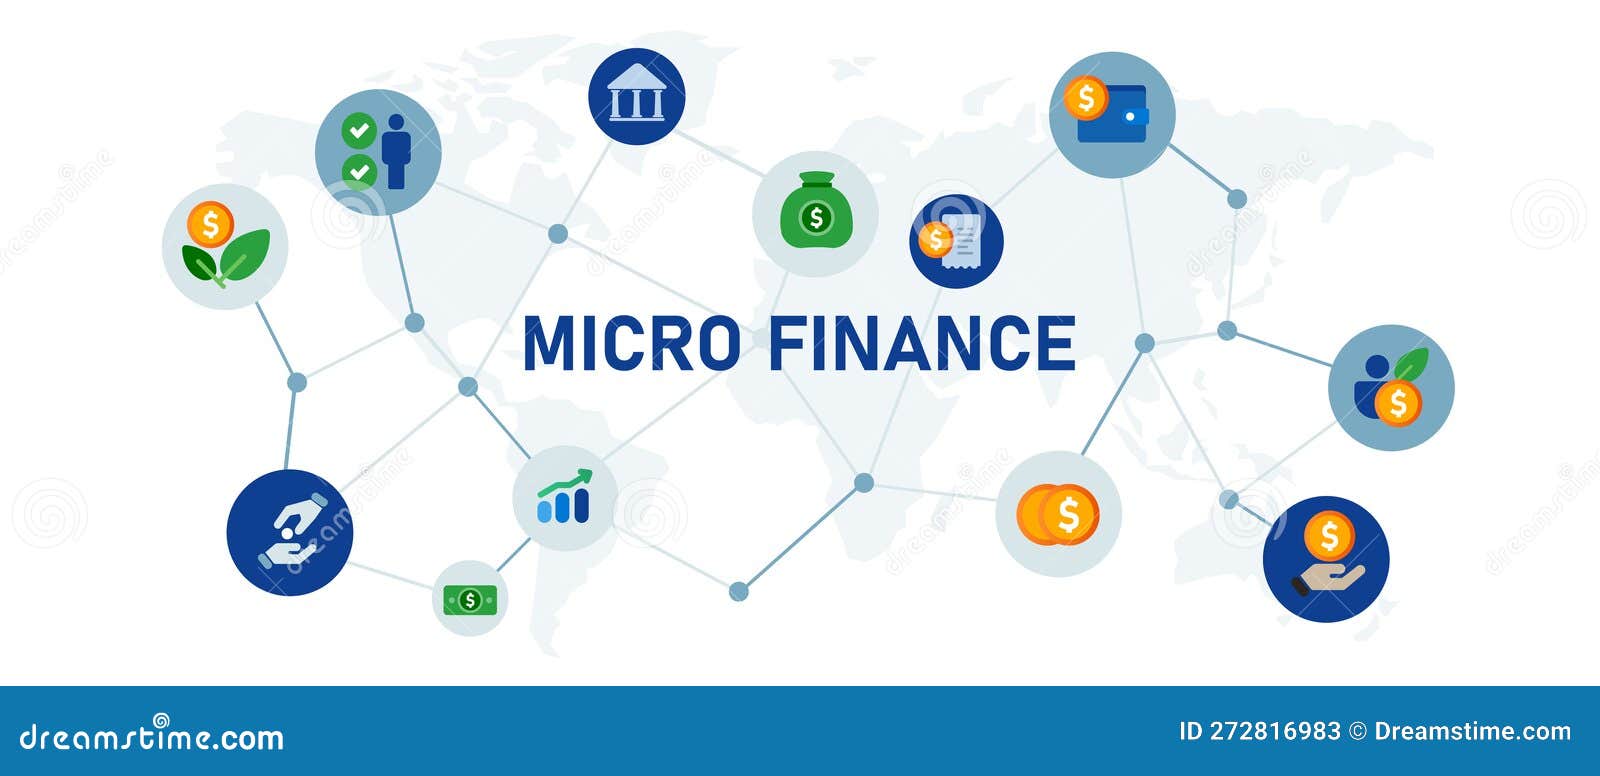 Microfinance Logo - Vecteurs et PSD gratuits à télécharger